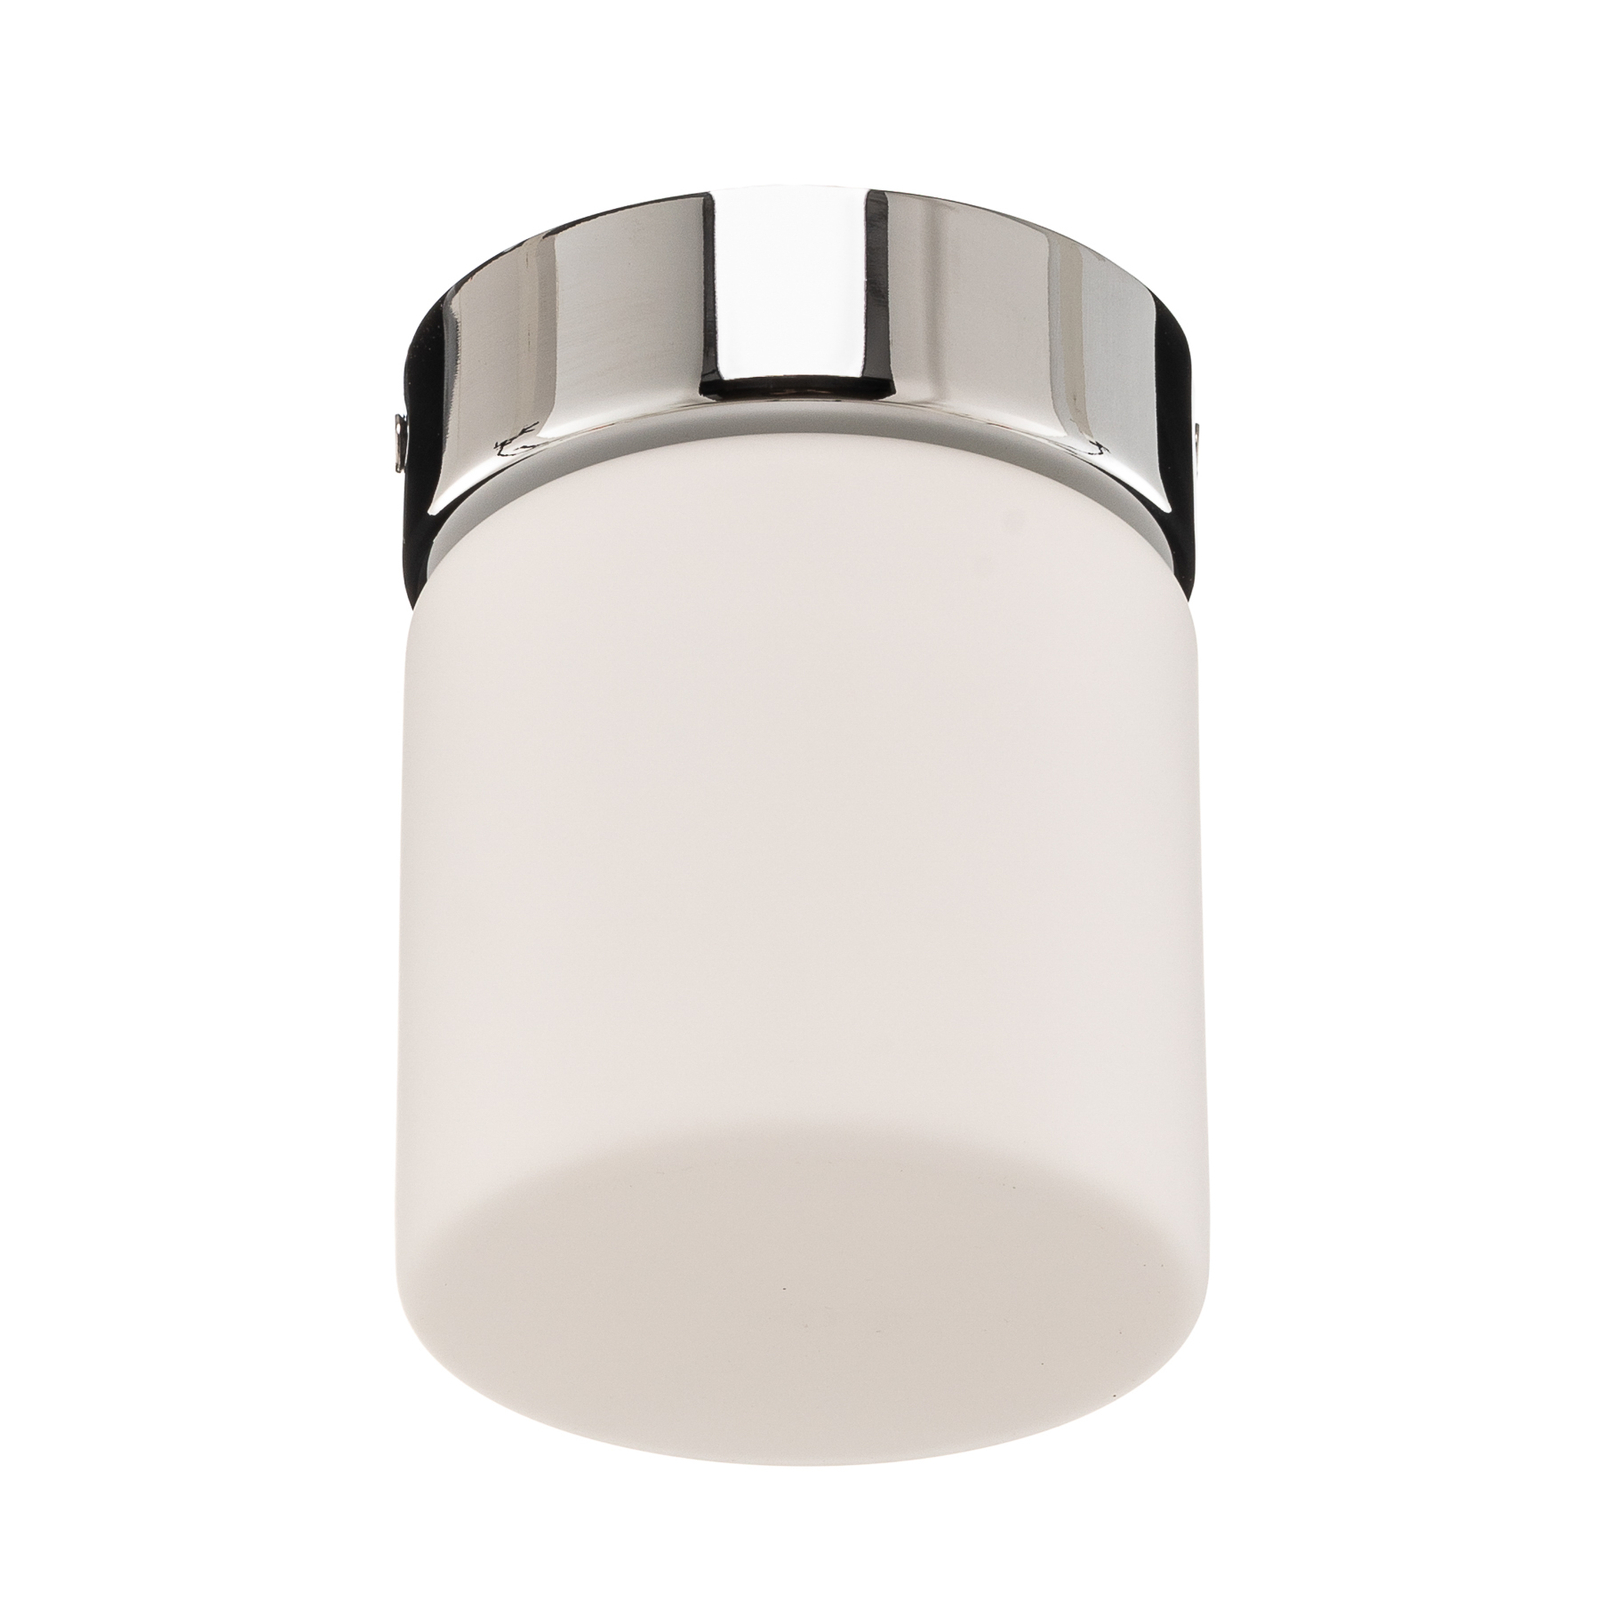 Helestra Keto LED stropna svjetiljka, cilindar, krom